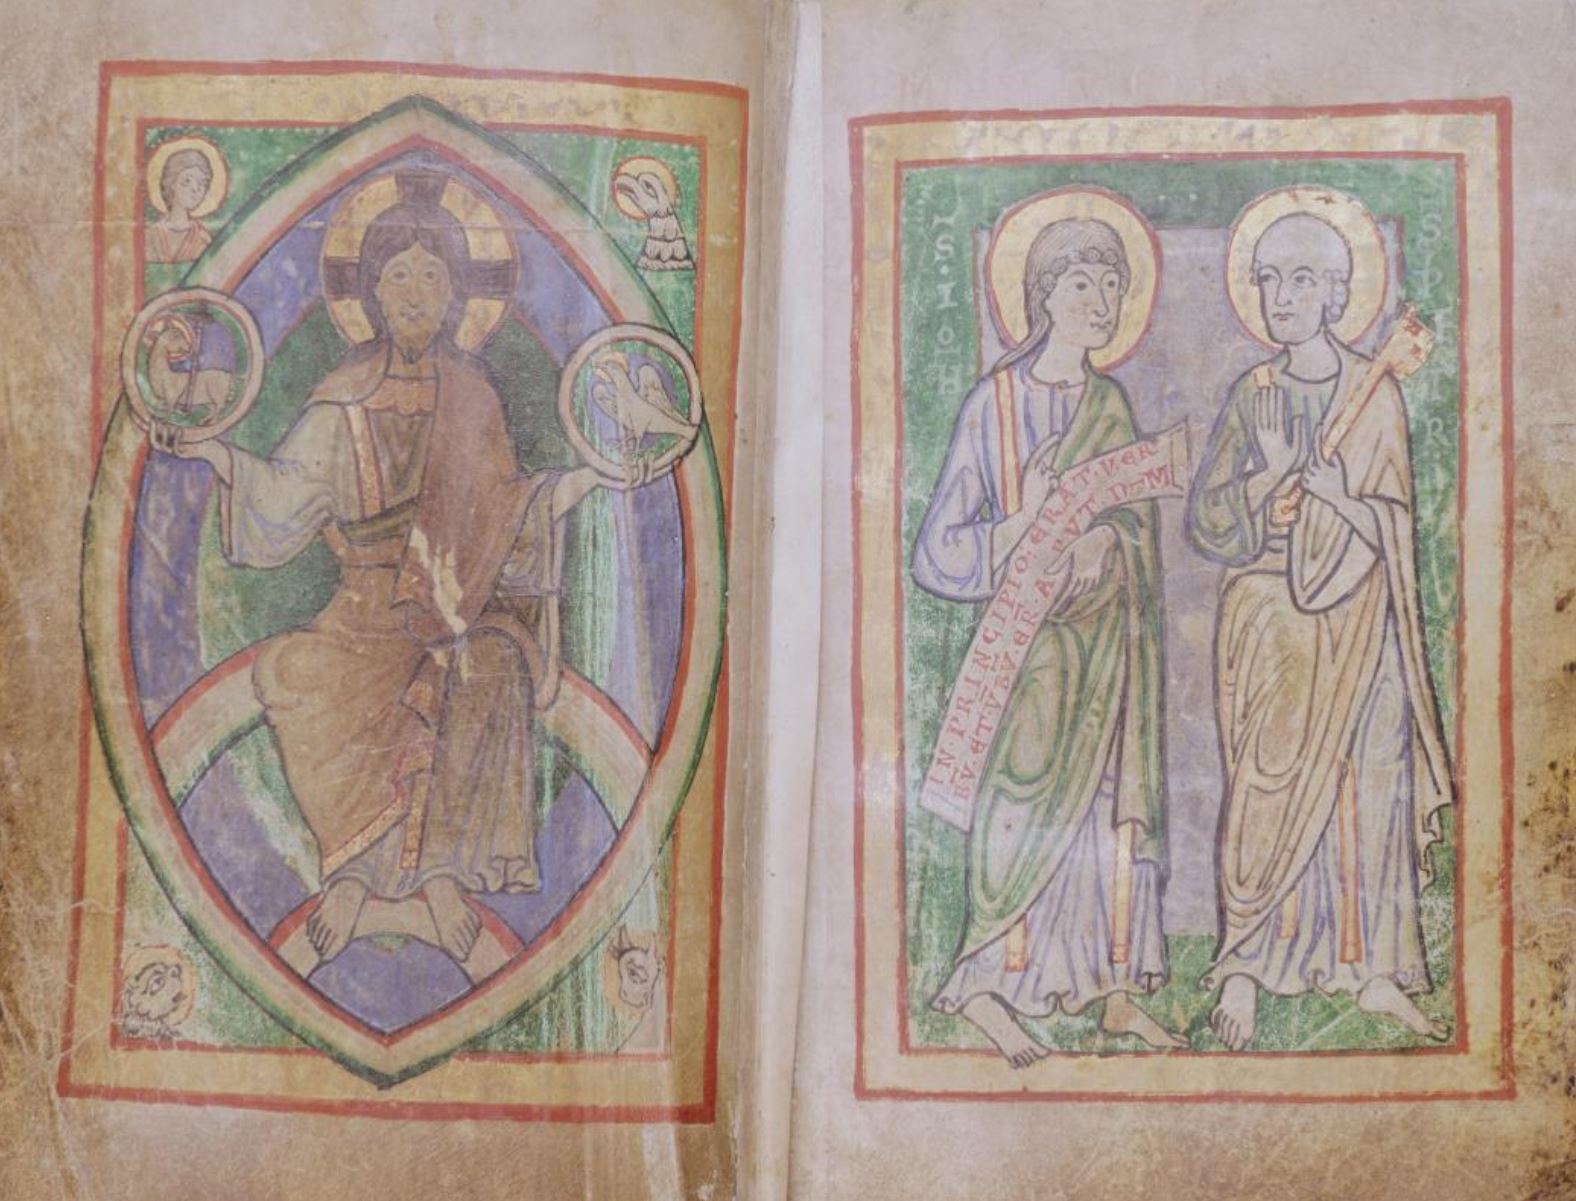 1140 ca Evangeliar aus St Aposteln Koln Rheinisches Bildarchiv W 244 fol 12v